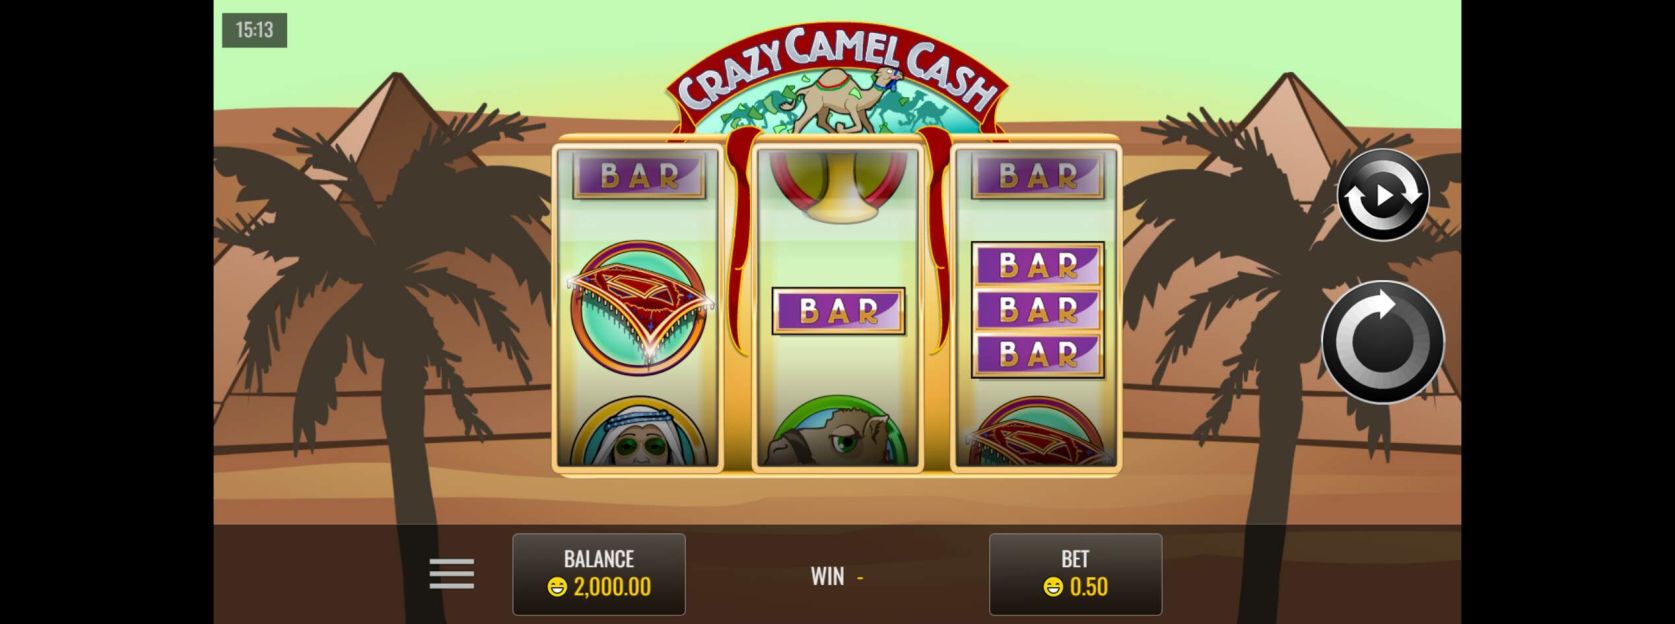 Crazy Camel Cash screenshot 1